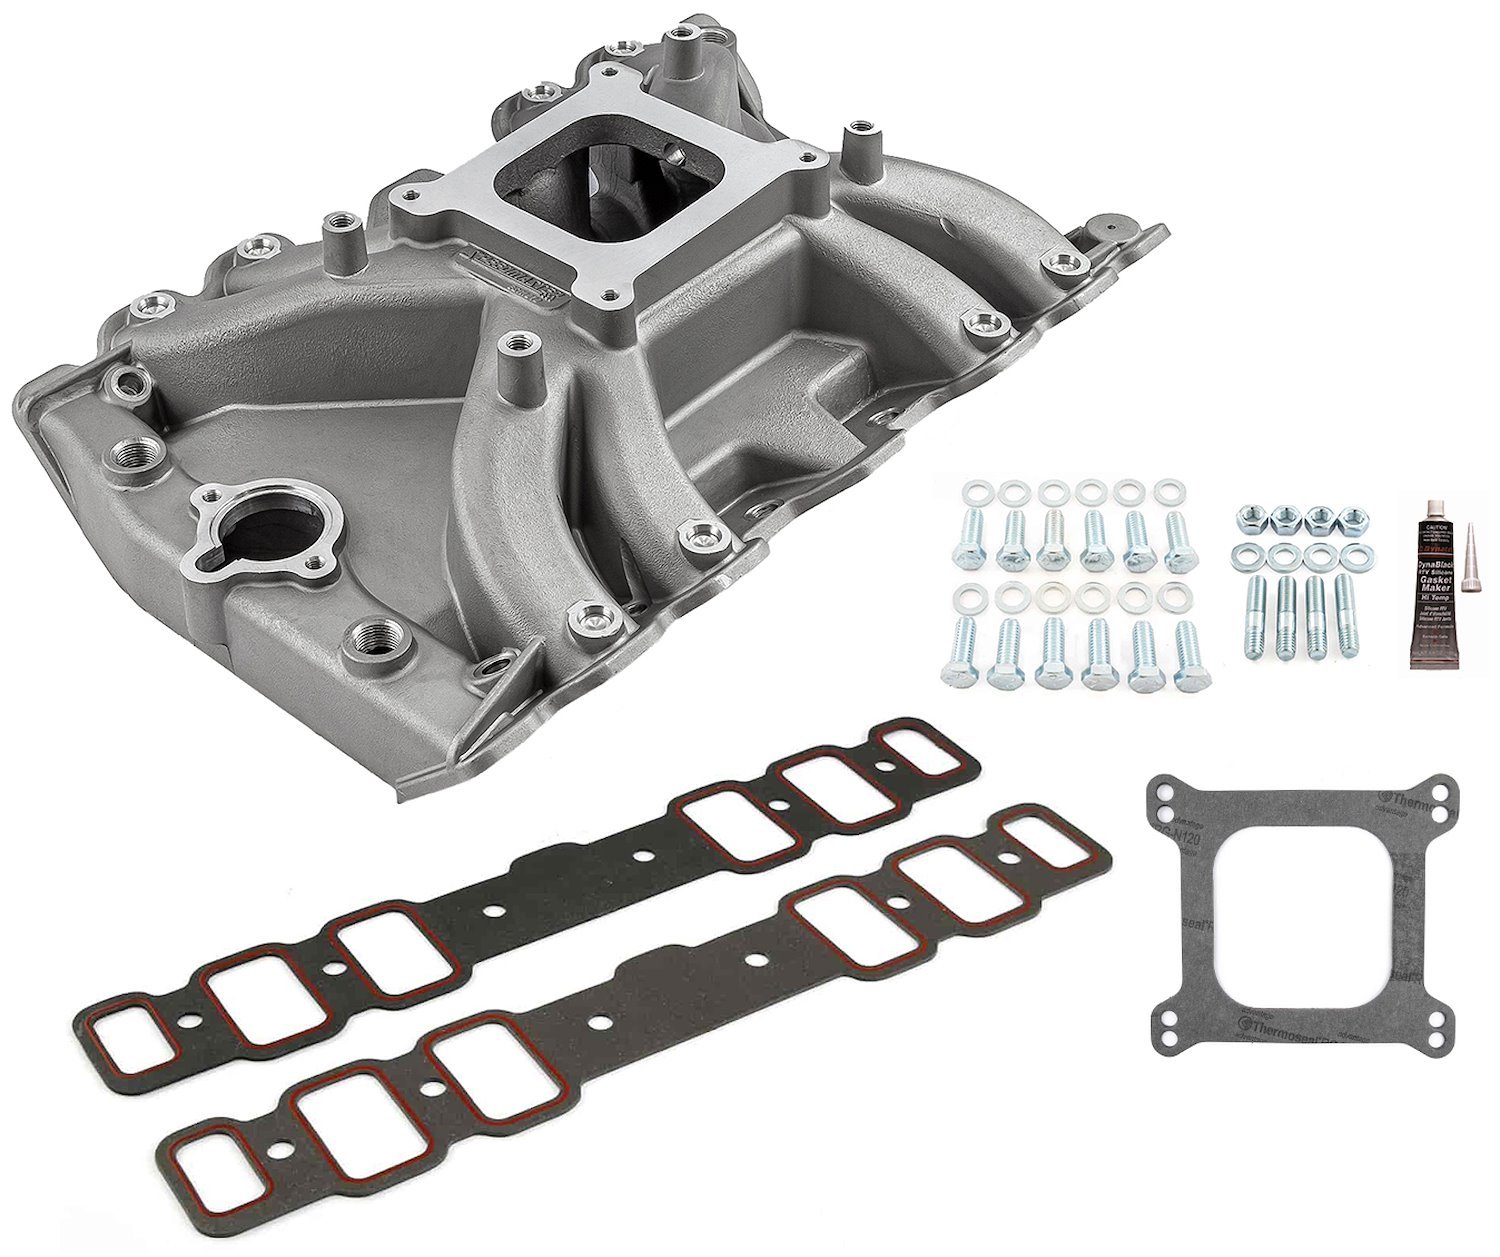 LowRise Intake Manifold Kit, Oldsmobile 400/425/455 ci - Satin Finish